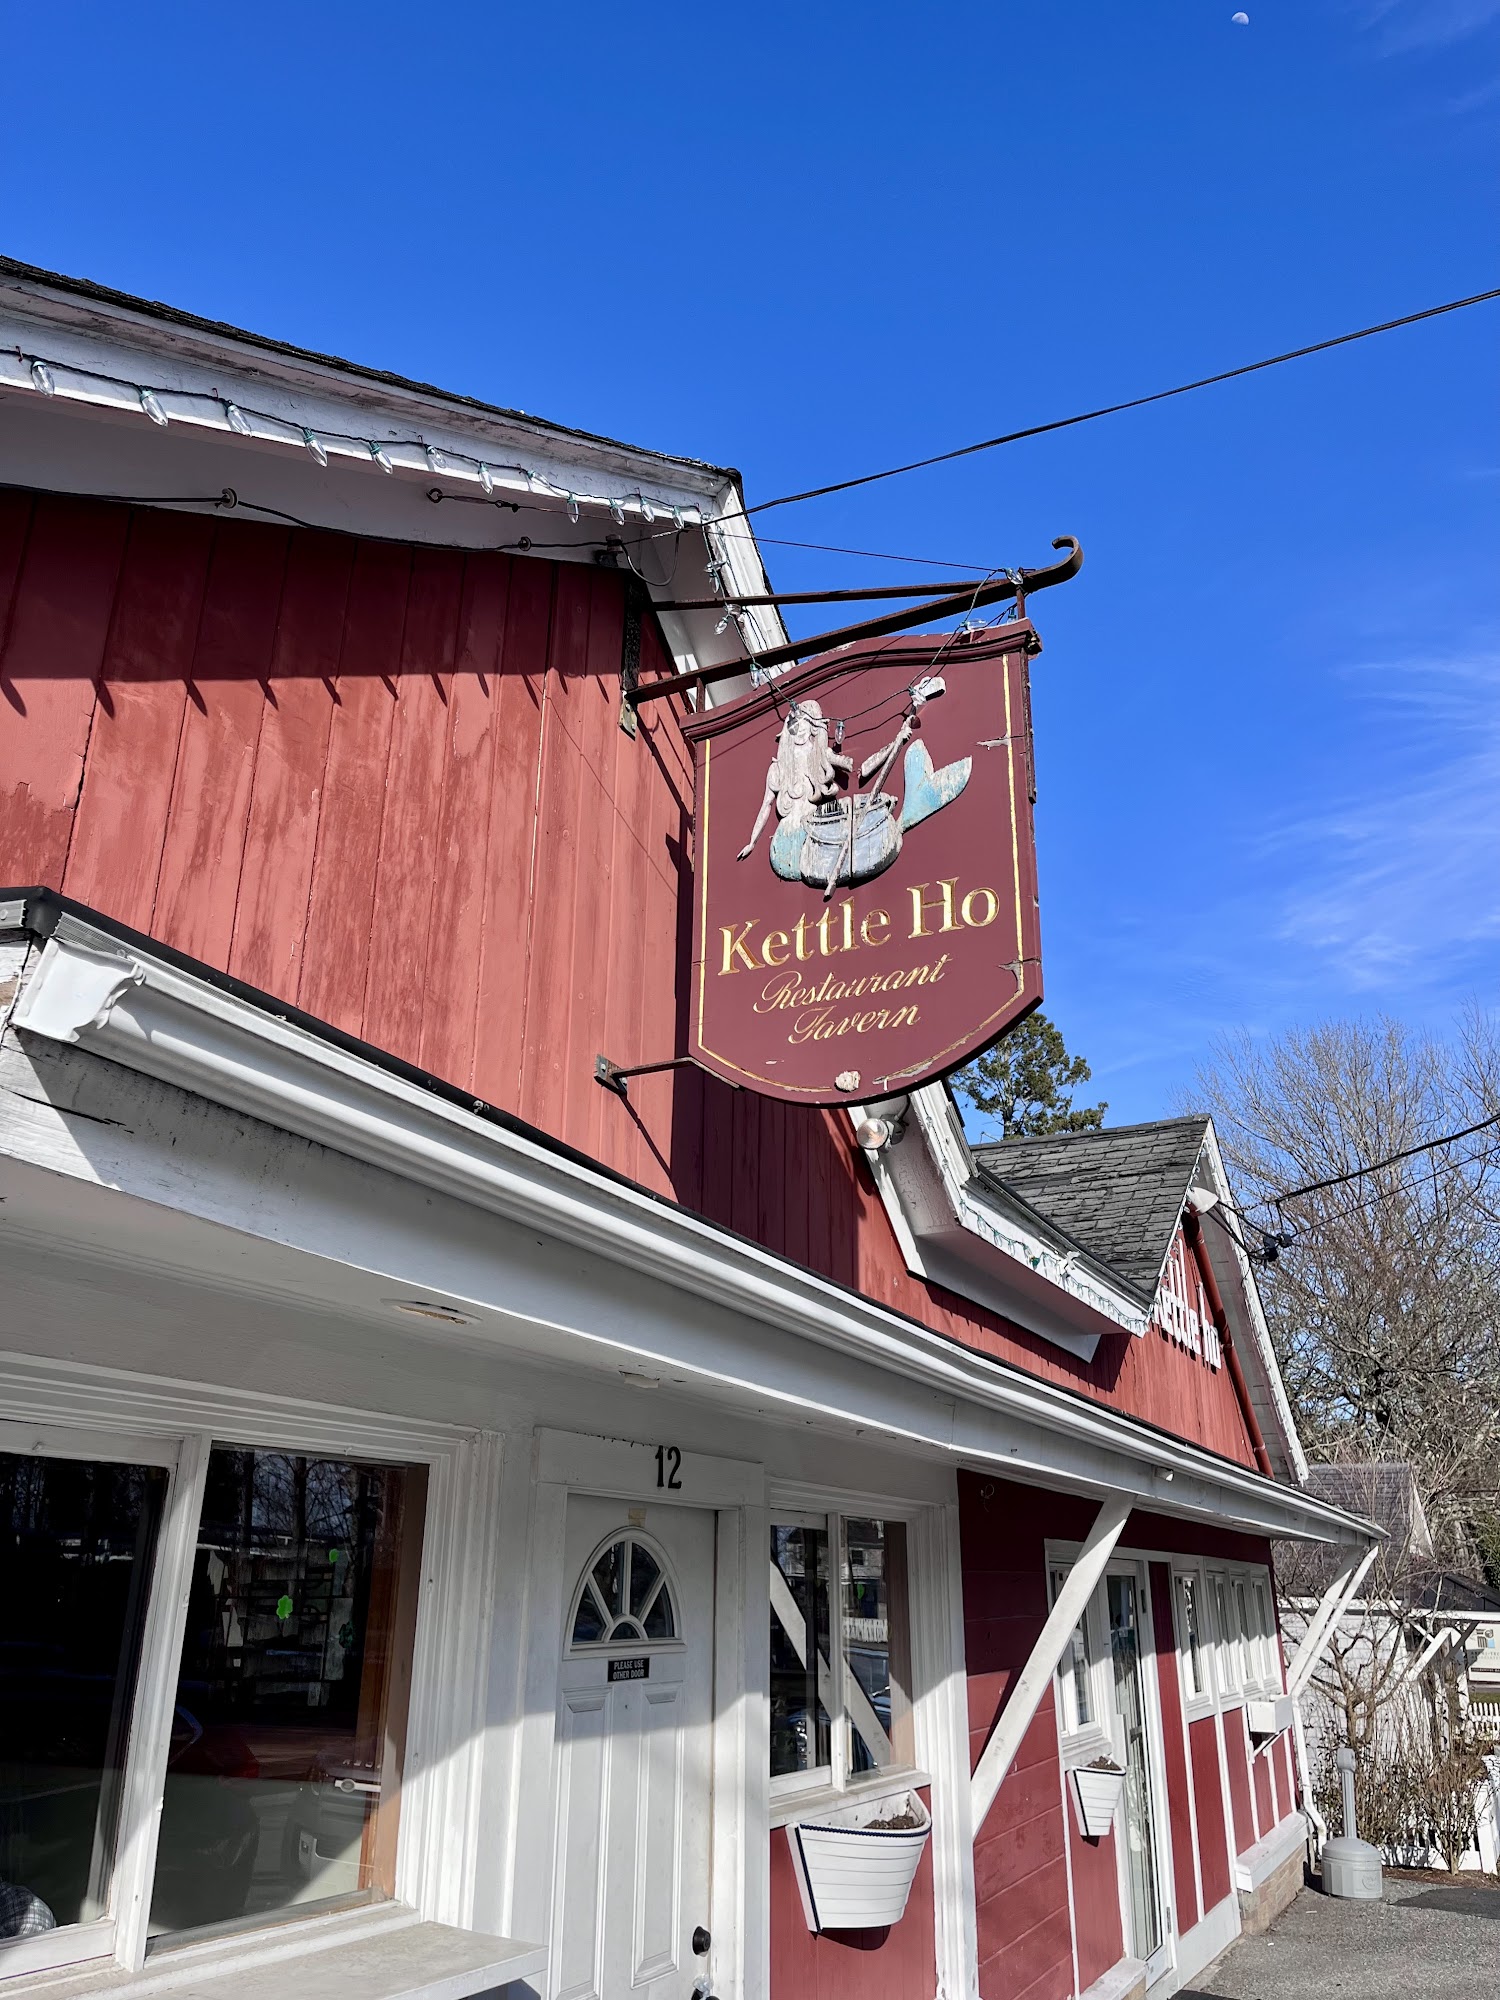 The Kettle Ho Restaurant & Taverna